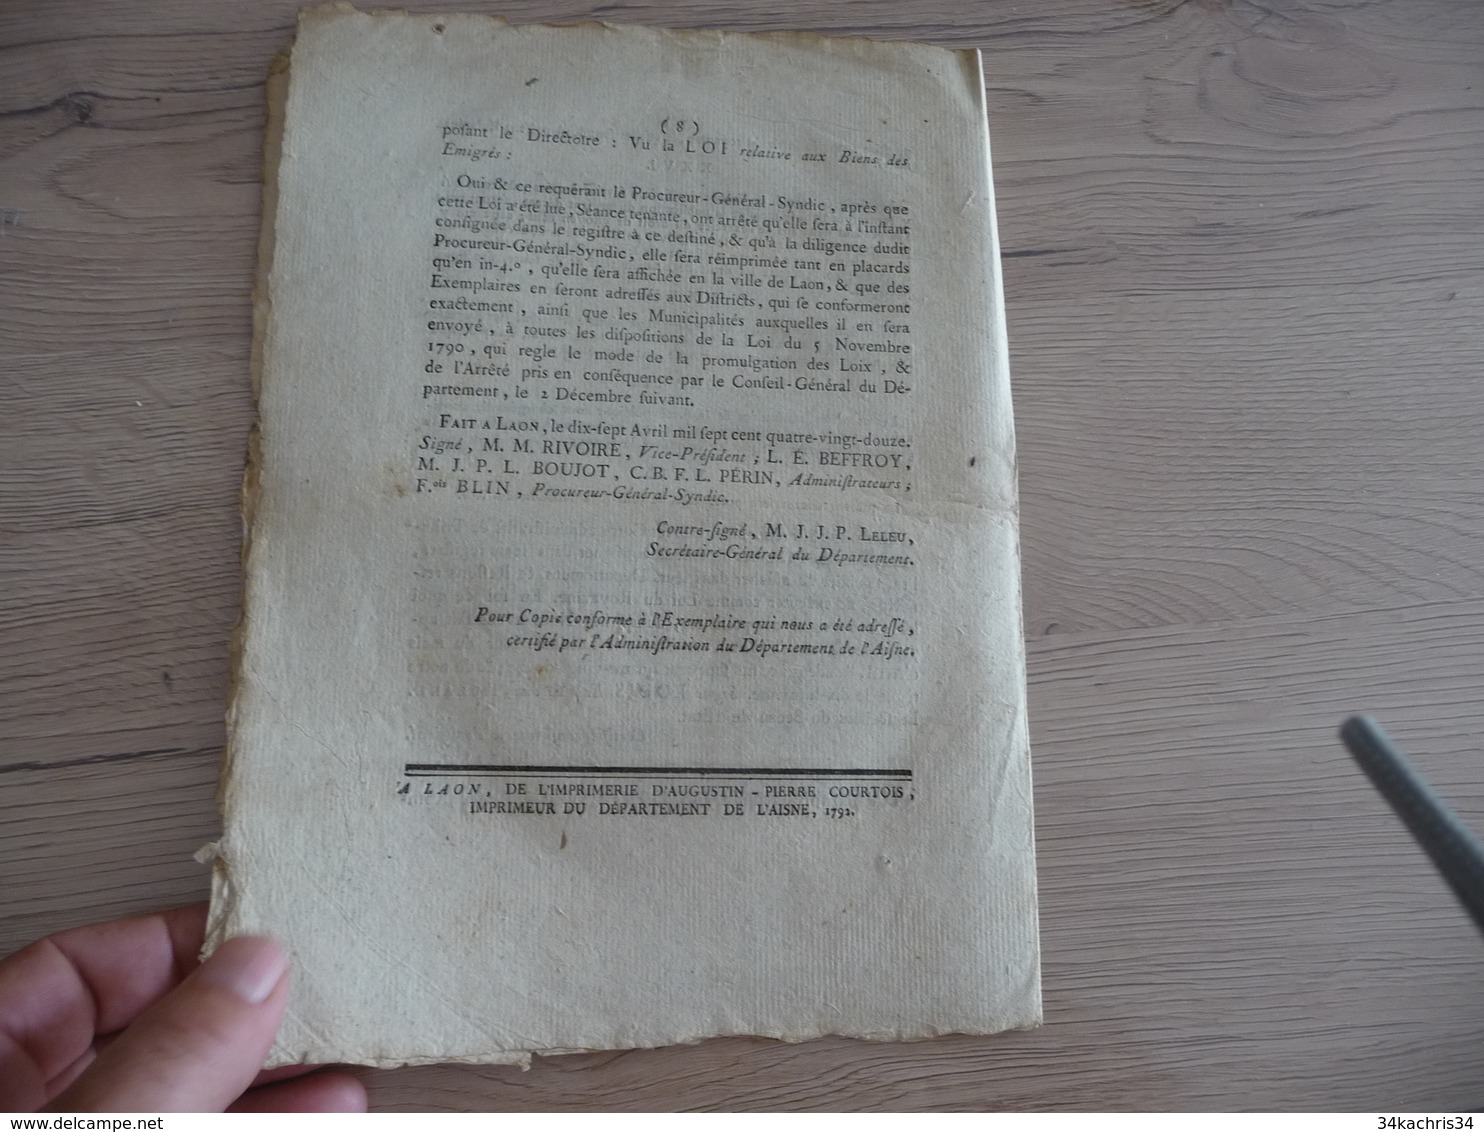 Loi Relative Aux Biens Des Emigrés Paris 08/04/1792 8 Pages - Gesetze & Erlasse